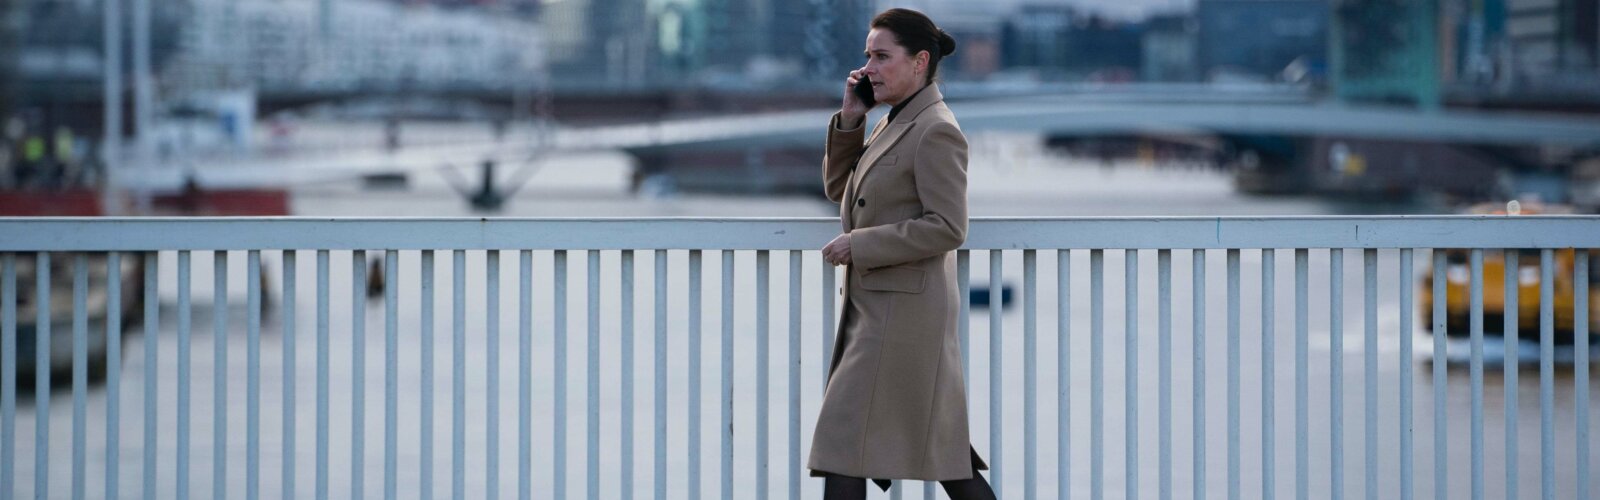 Borgen-Hauptdarstellerin Sidse Babett Knudsen läuft mit einem Handy am Ohr über eine Brücke in Kopenhagen.